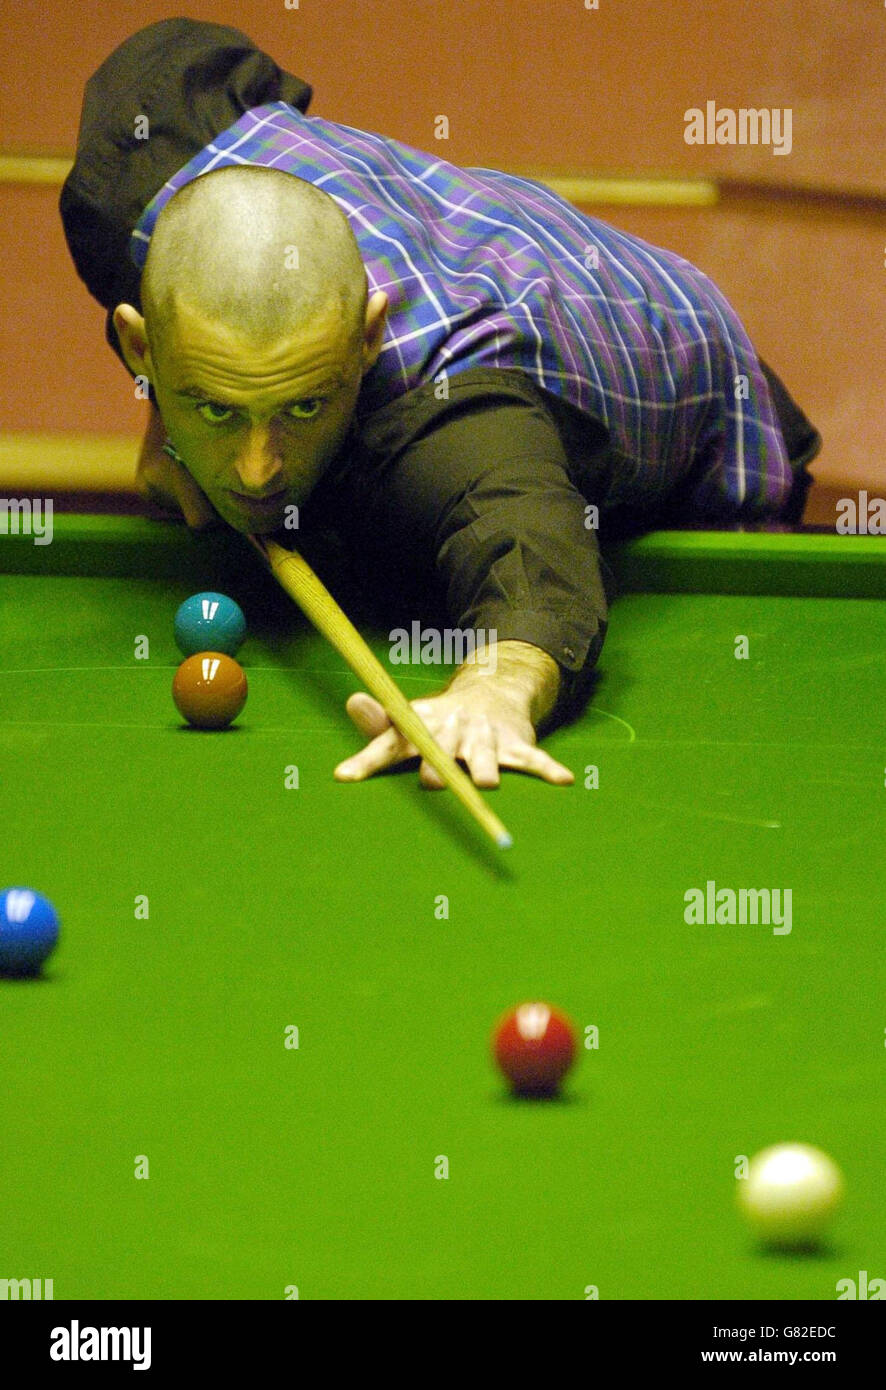 Snooker - Campionato del mondo delle Ambasciate 2005 - secondo turno - Ronnie o'Sullivan v Allister carter - The Crucible. Ronnie o'Sullivan in azione. Foto Stock